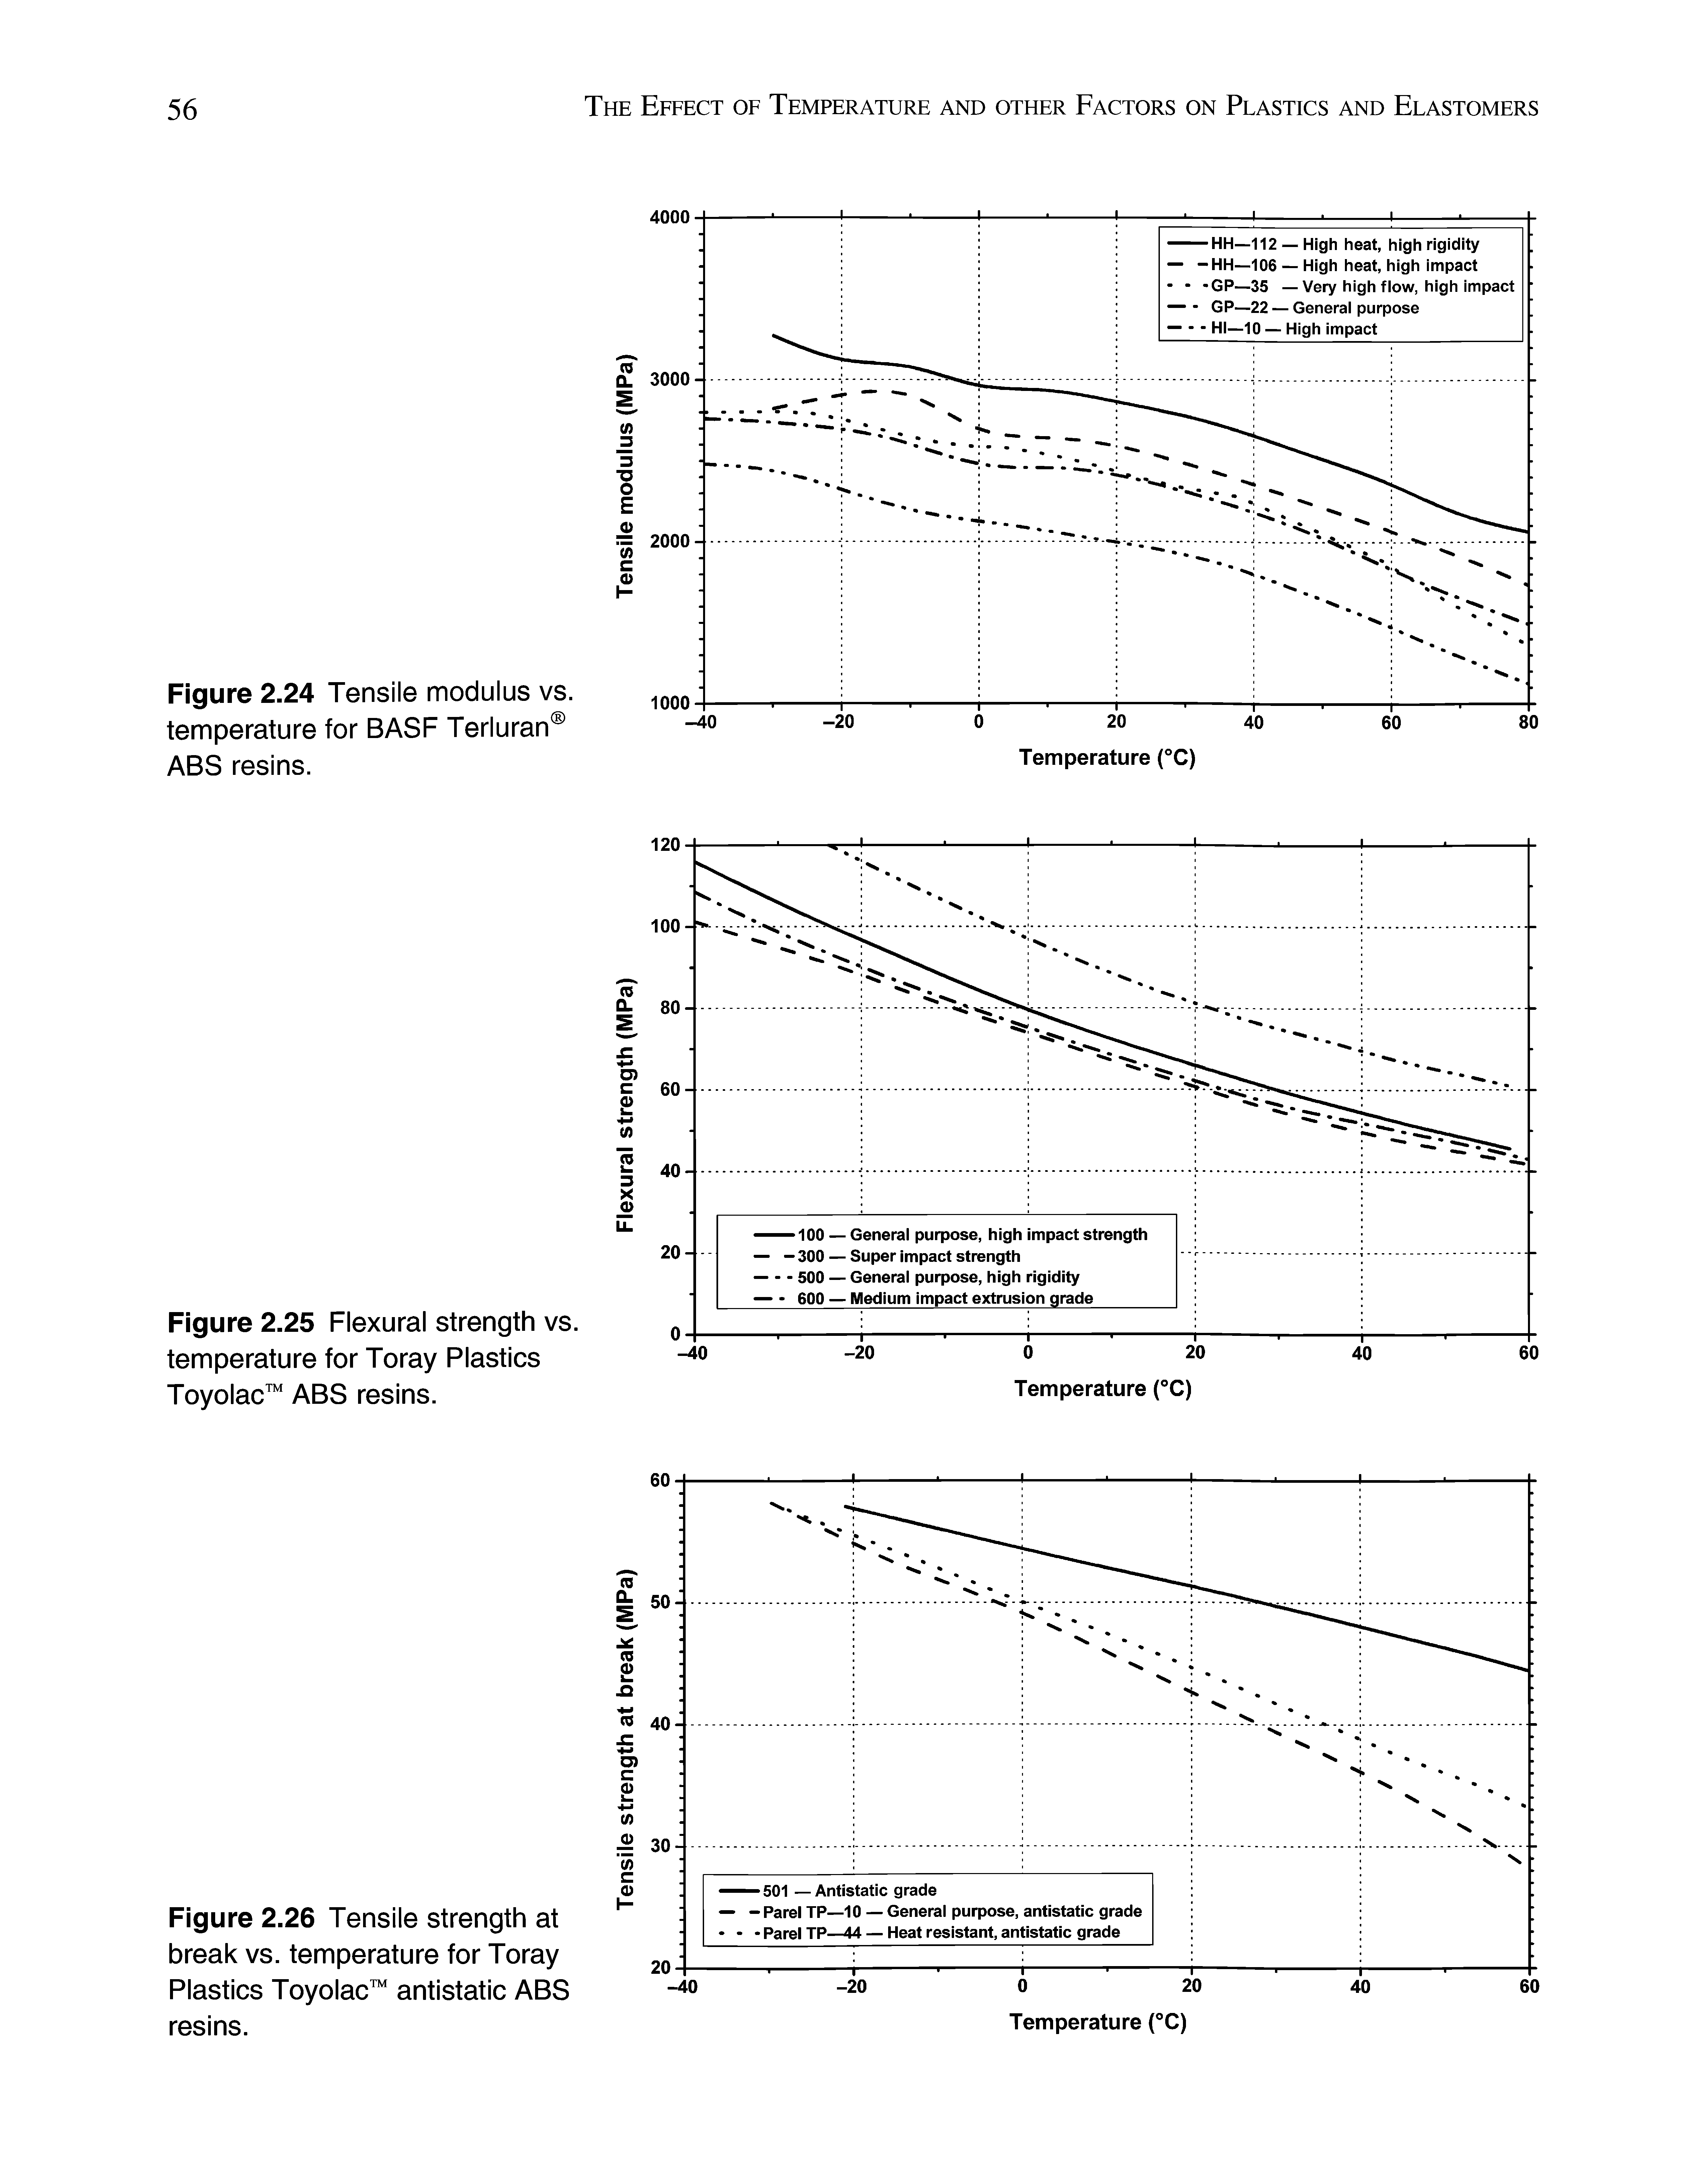 Figure 2.24 Tensile modulus vs. temperature for BASF Terluran ABS resins.